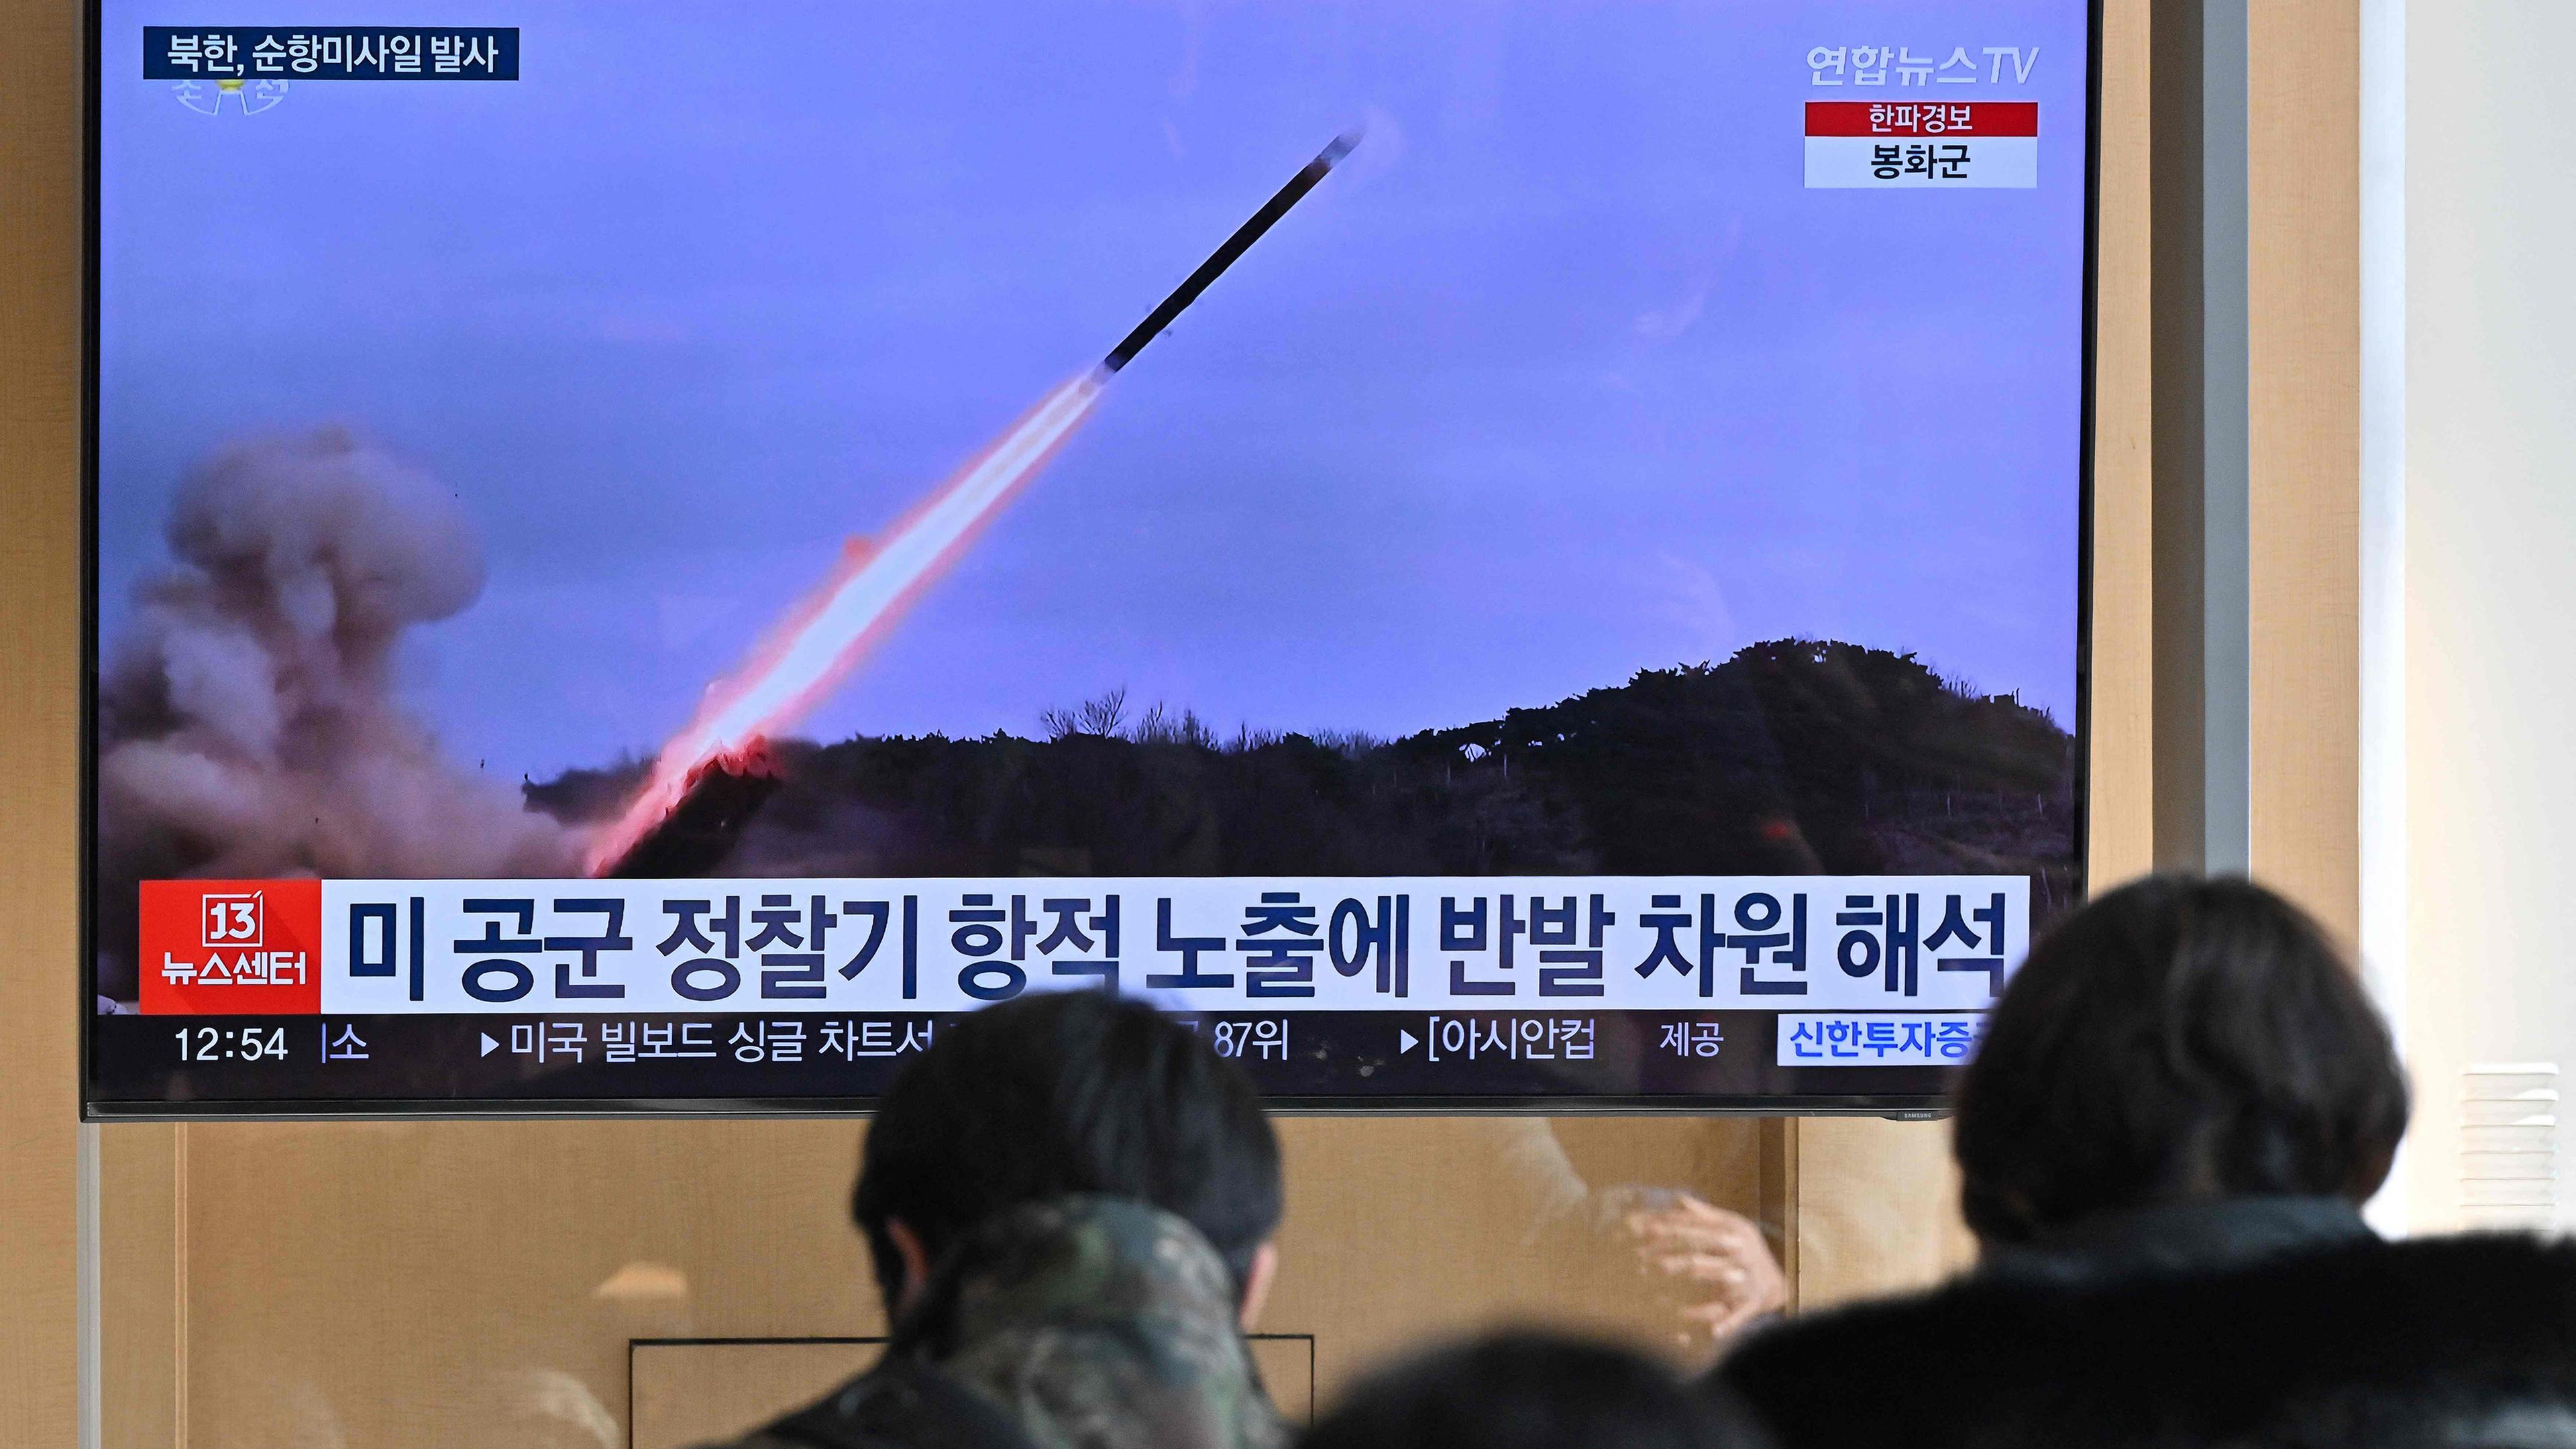 Menschen schauen auf einen Fernsehbildschirm in Seoul (Südkorea), auf dem ein Raketenabschuss zu sehen ist.